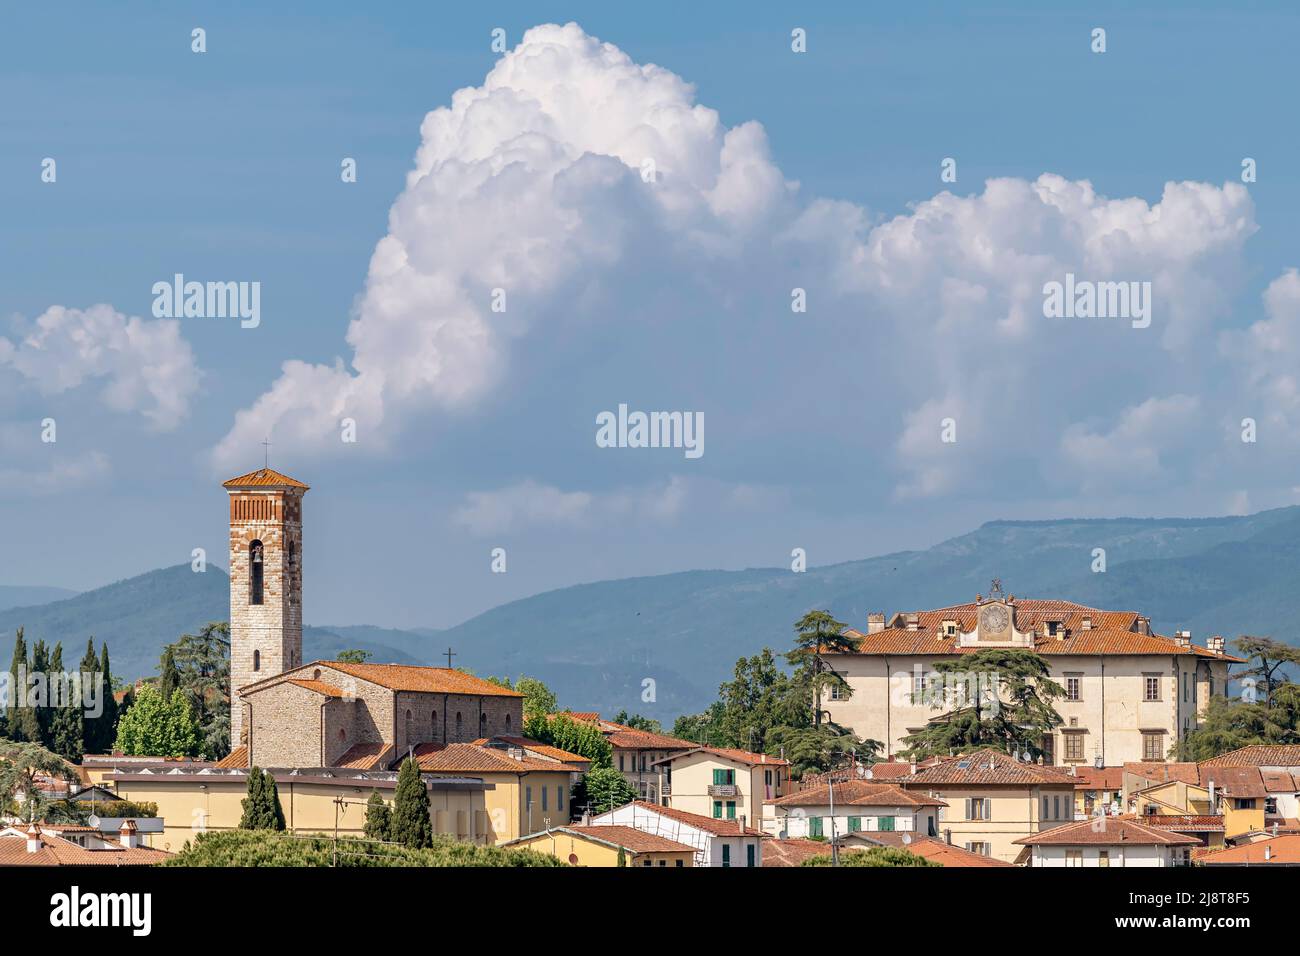 Luftaufnahme des historischen Zentrums von Poggio a Caiano, Prato, Italien, unter einem schönen Himmel Stockfoto